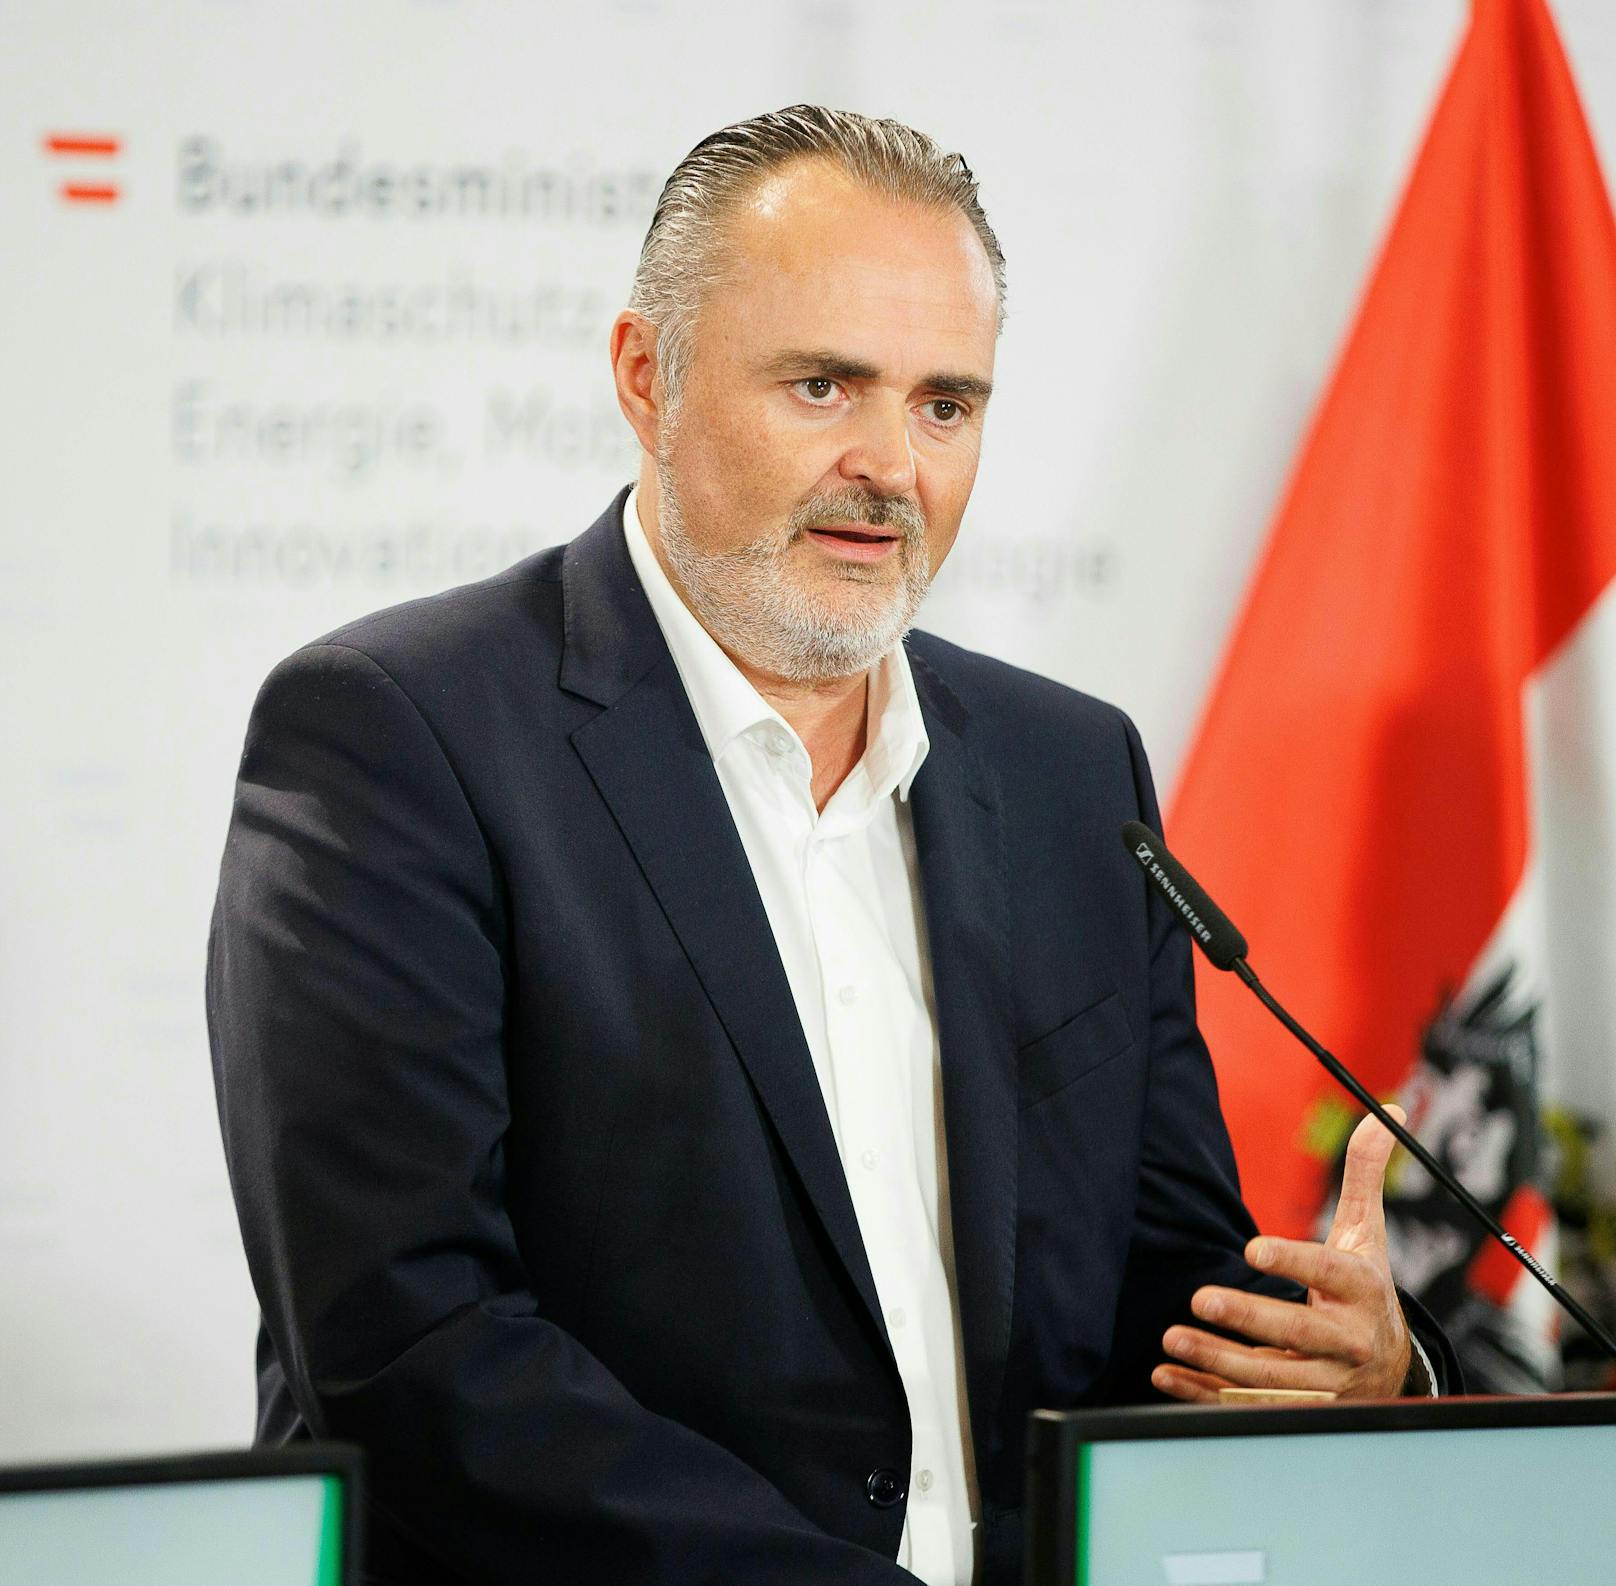 Burgenlands Landeshauptmann Hans Peter Doskozil (SPÖ) sprach von einer Bankrott-Erklärung.